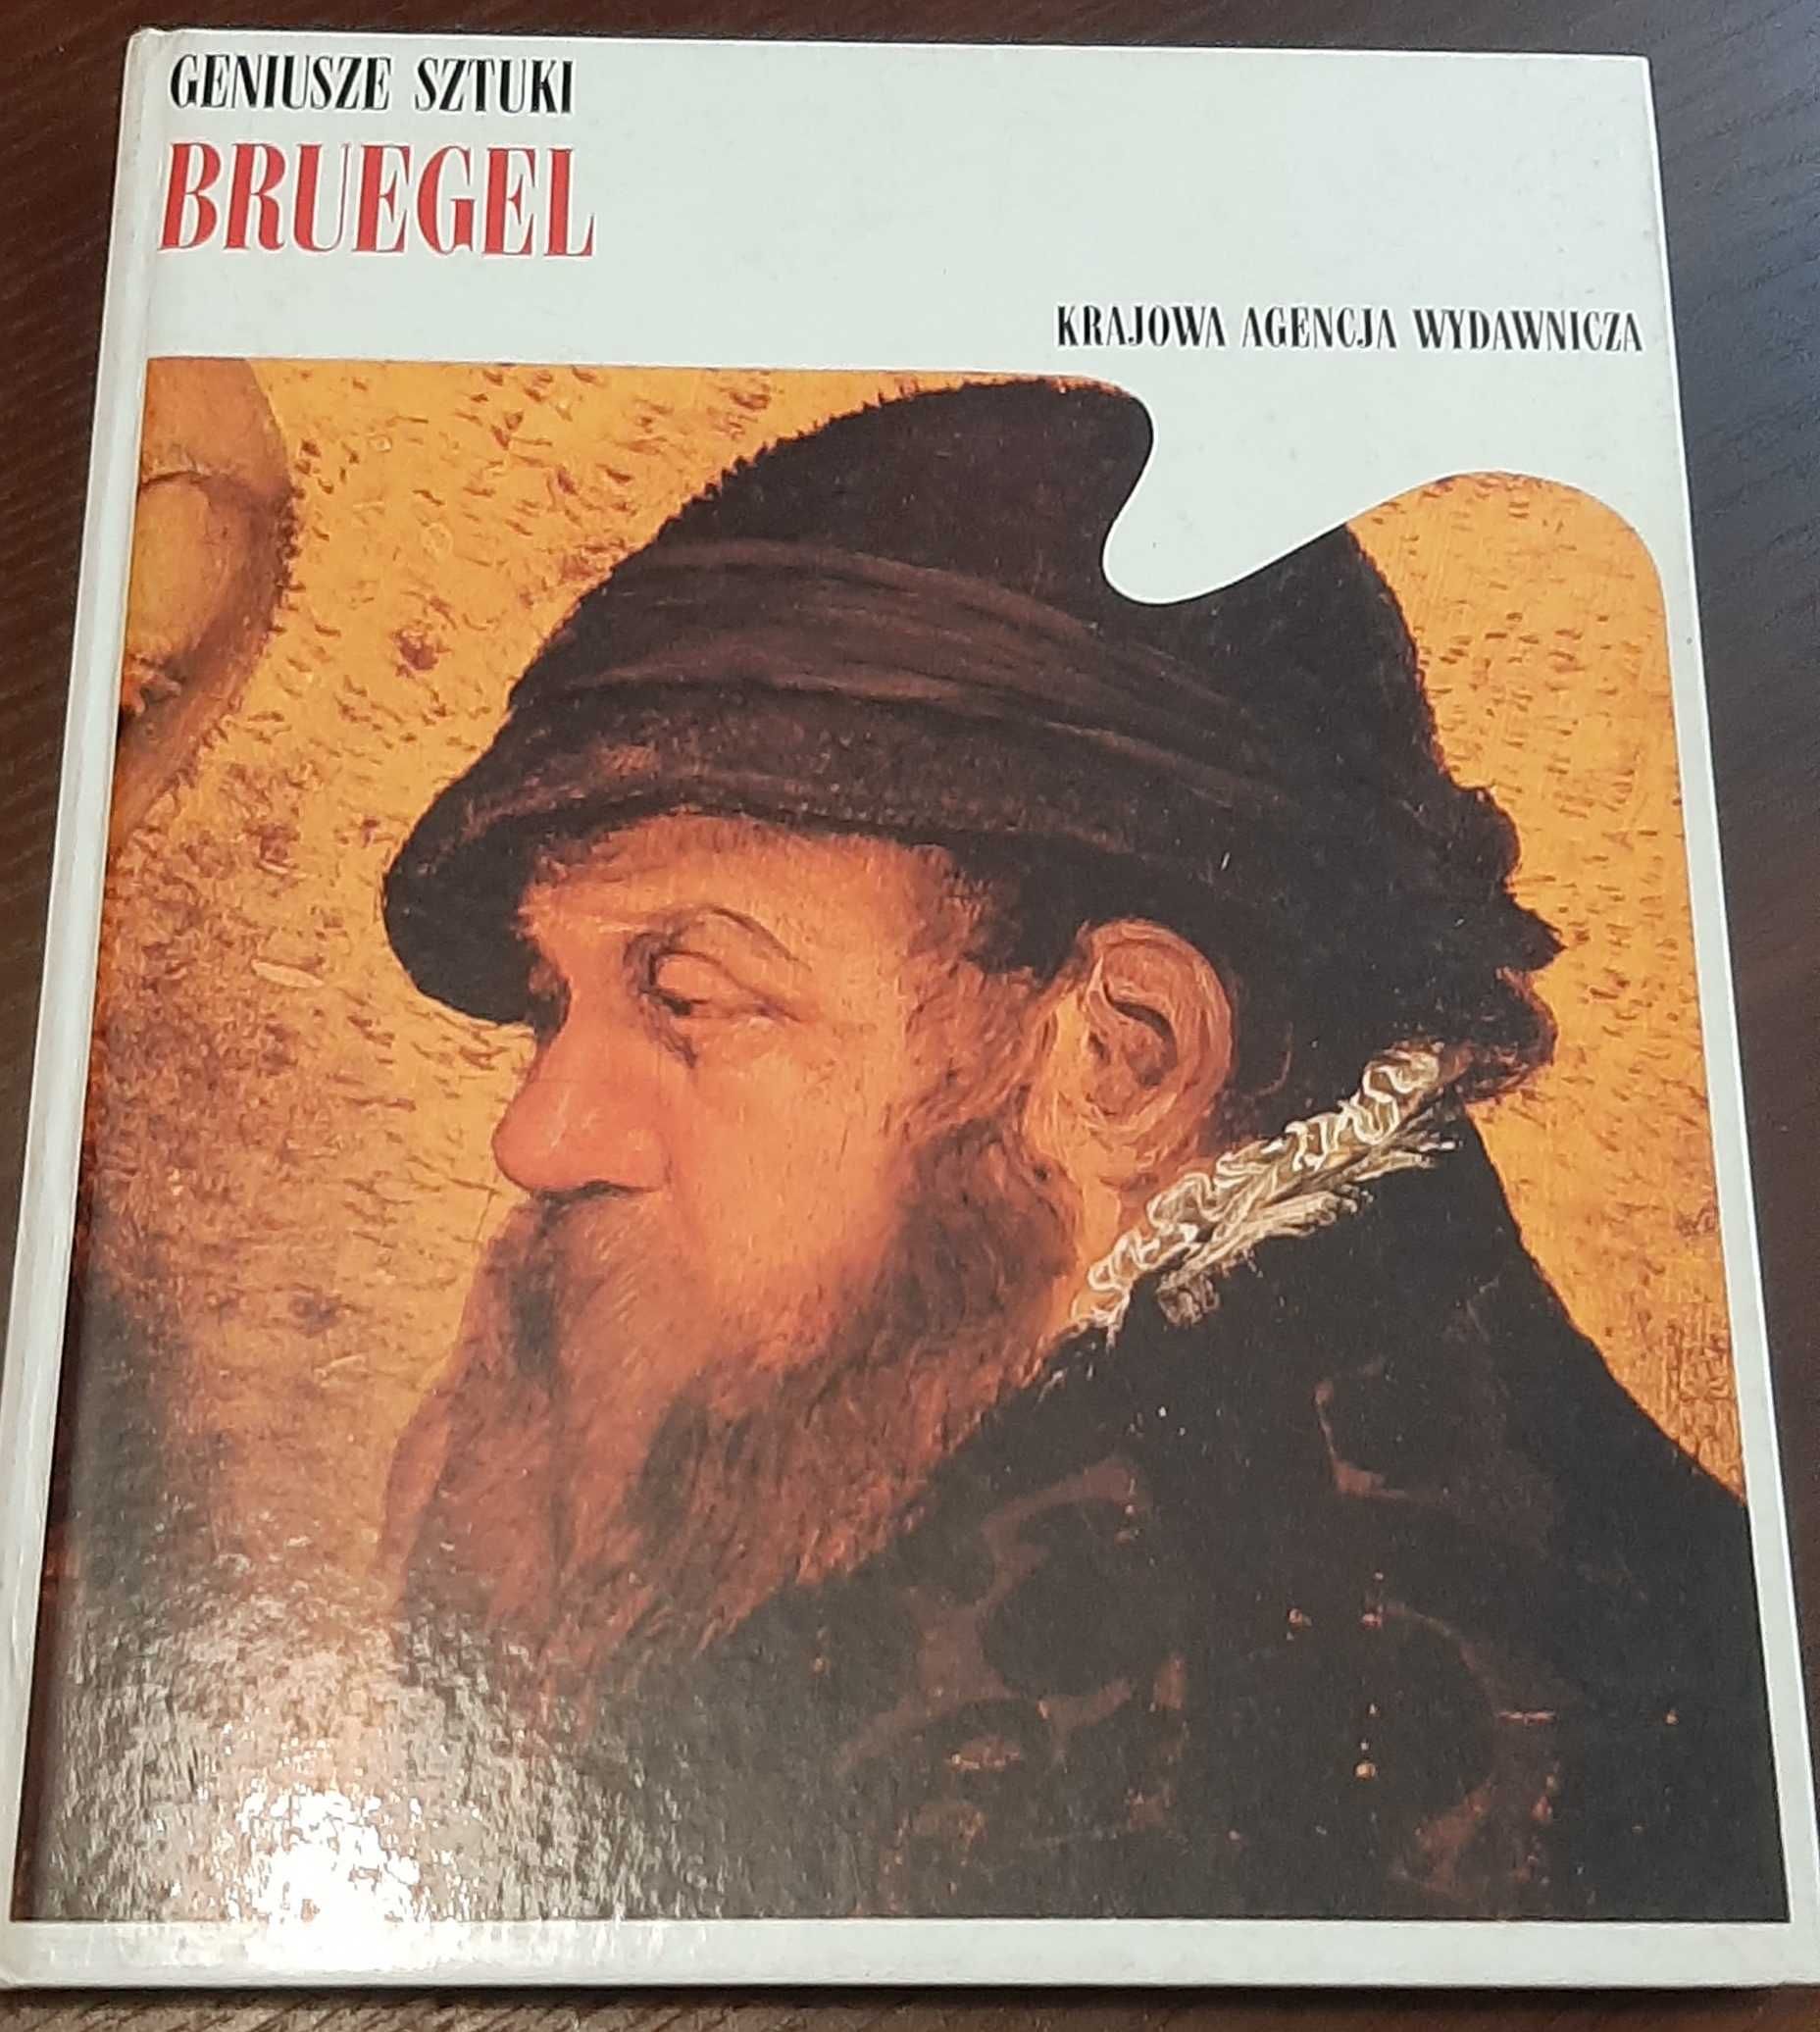 Geniusze Sztuki 9 tomów Bruegel Rafael